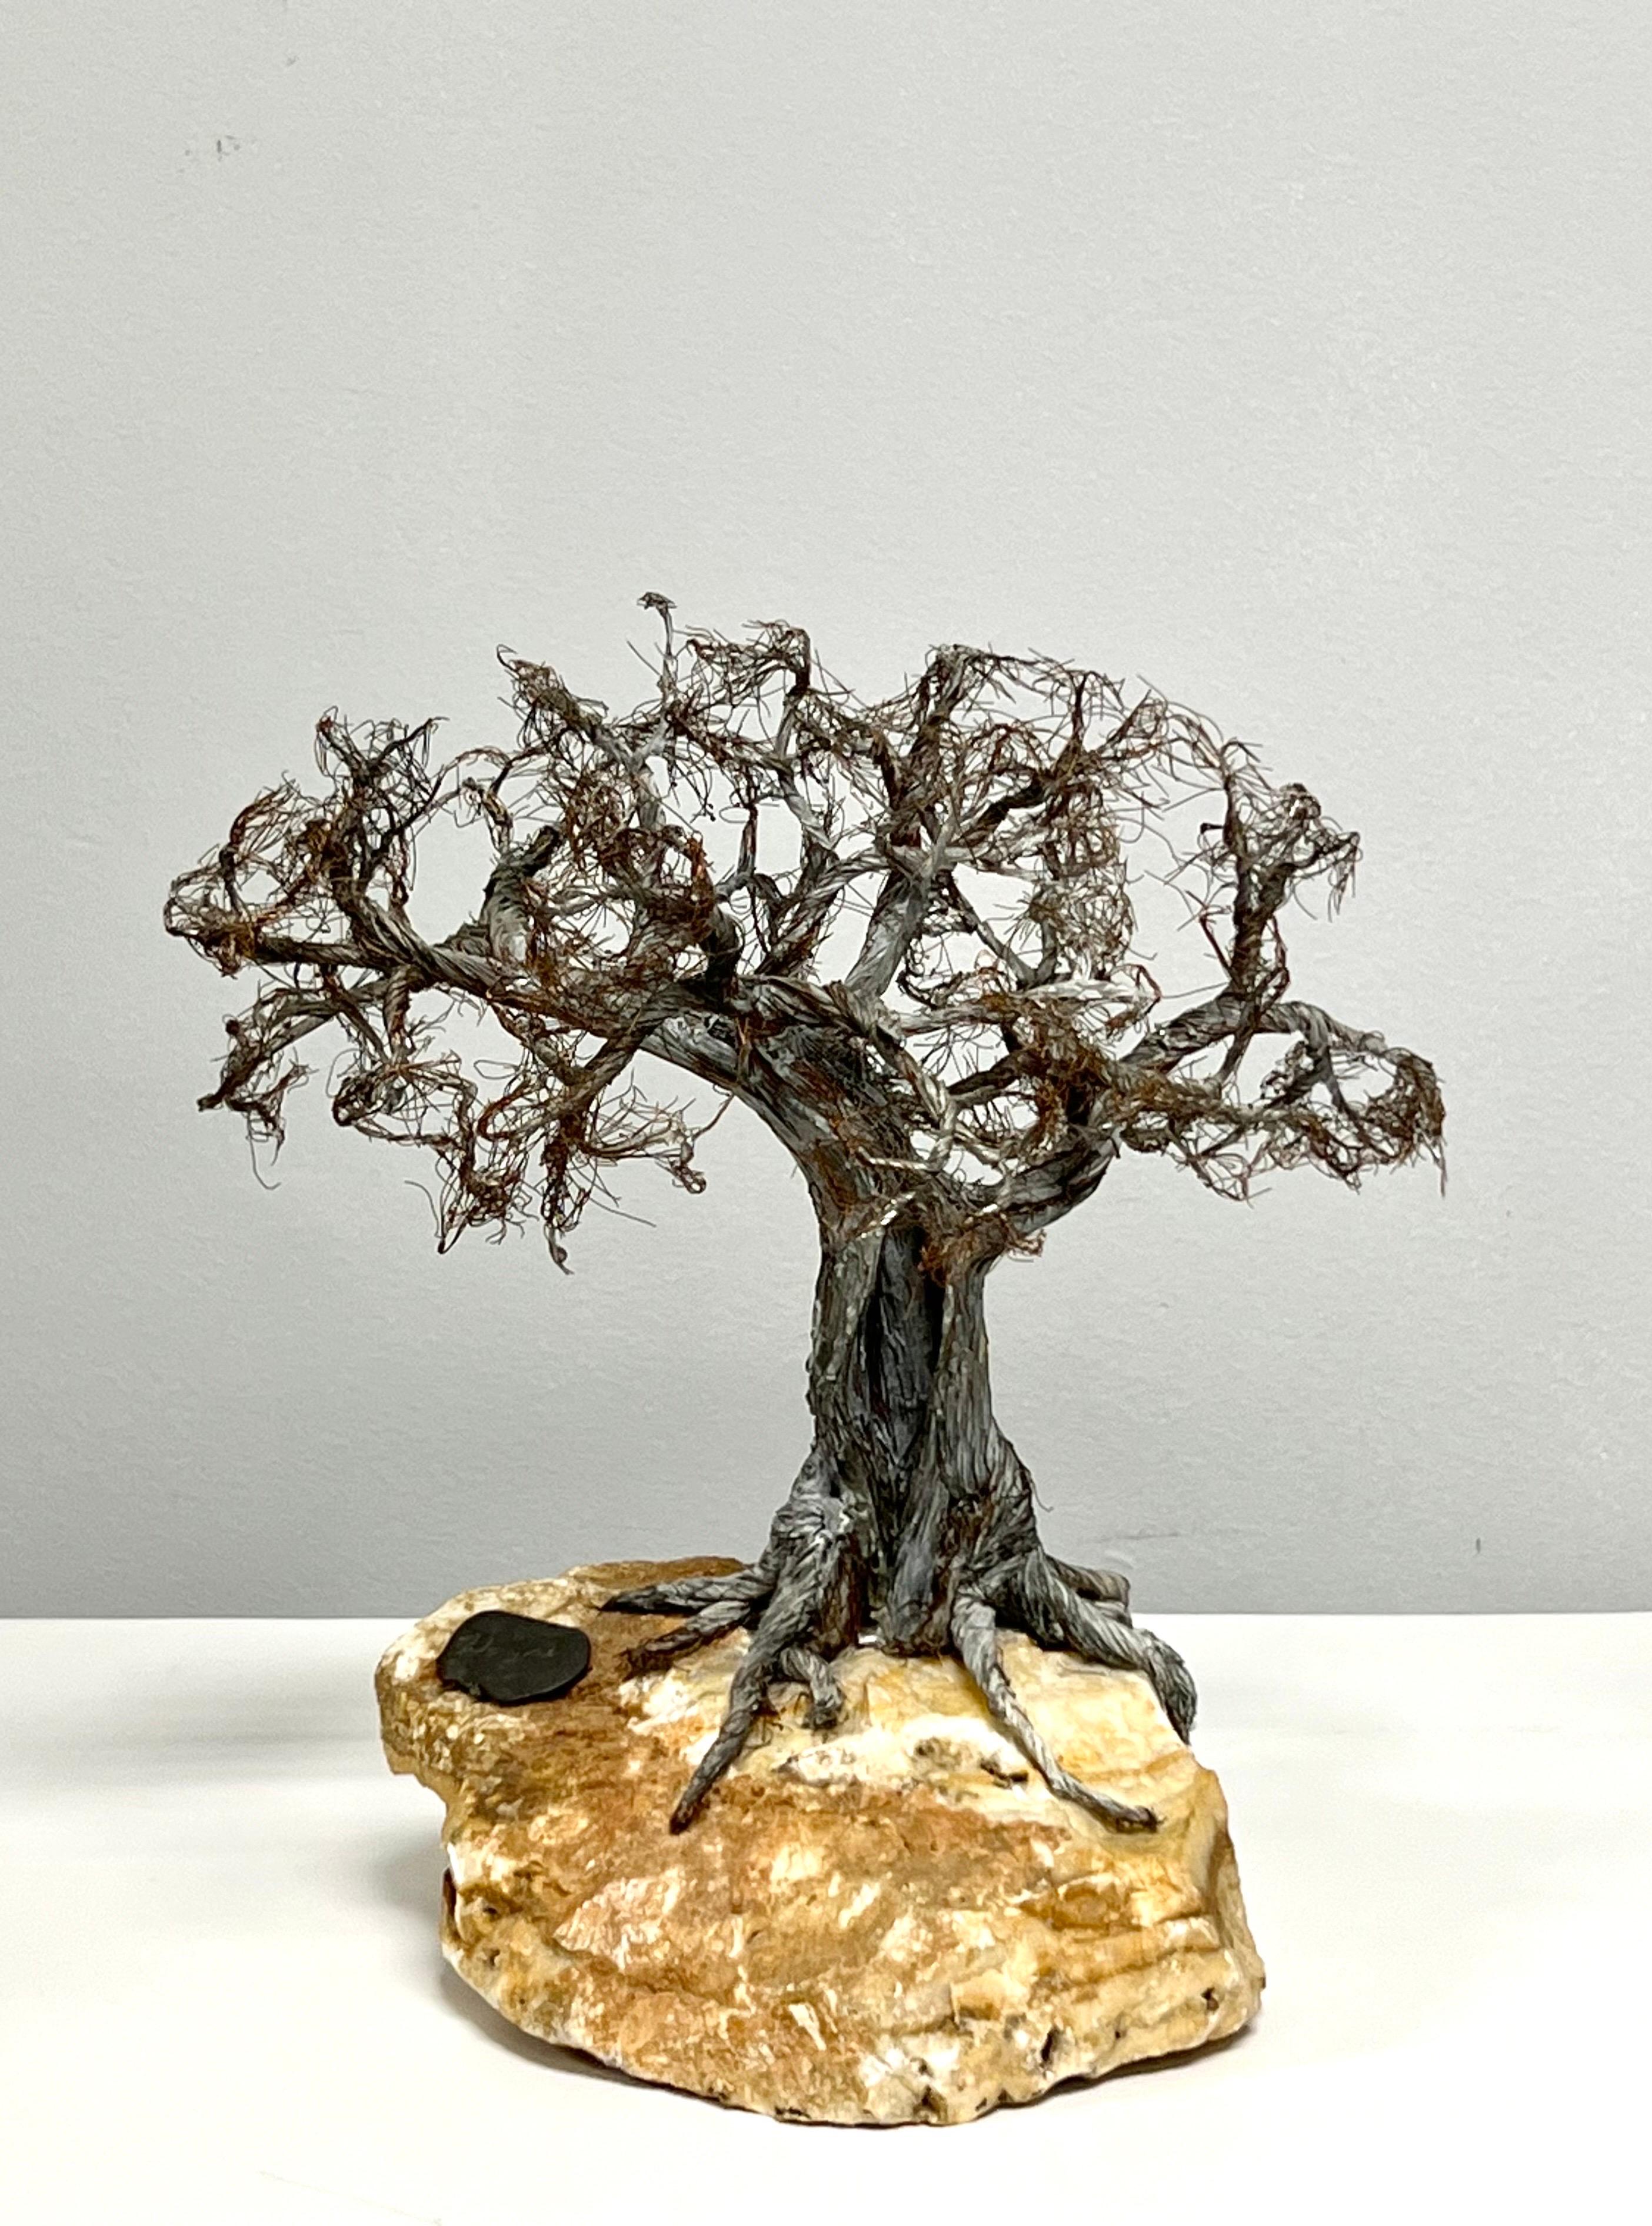 Kunst Bildhauerei
Skulpturale Raw Edge Botanische Kunst Bonsai-Baum
Auf einem rohkantigen Steinsockel. Signiert auf einer Bronzeplakette.
Gebrauchter, unrestaurierter Original-Vintage-Zustand.